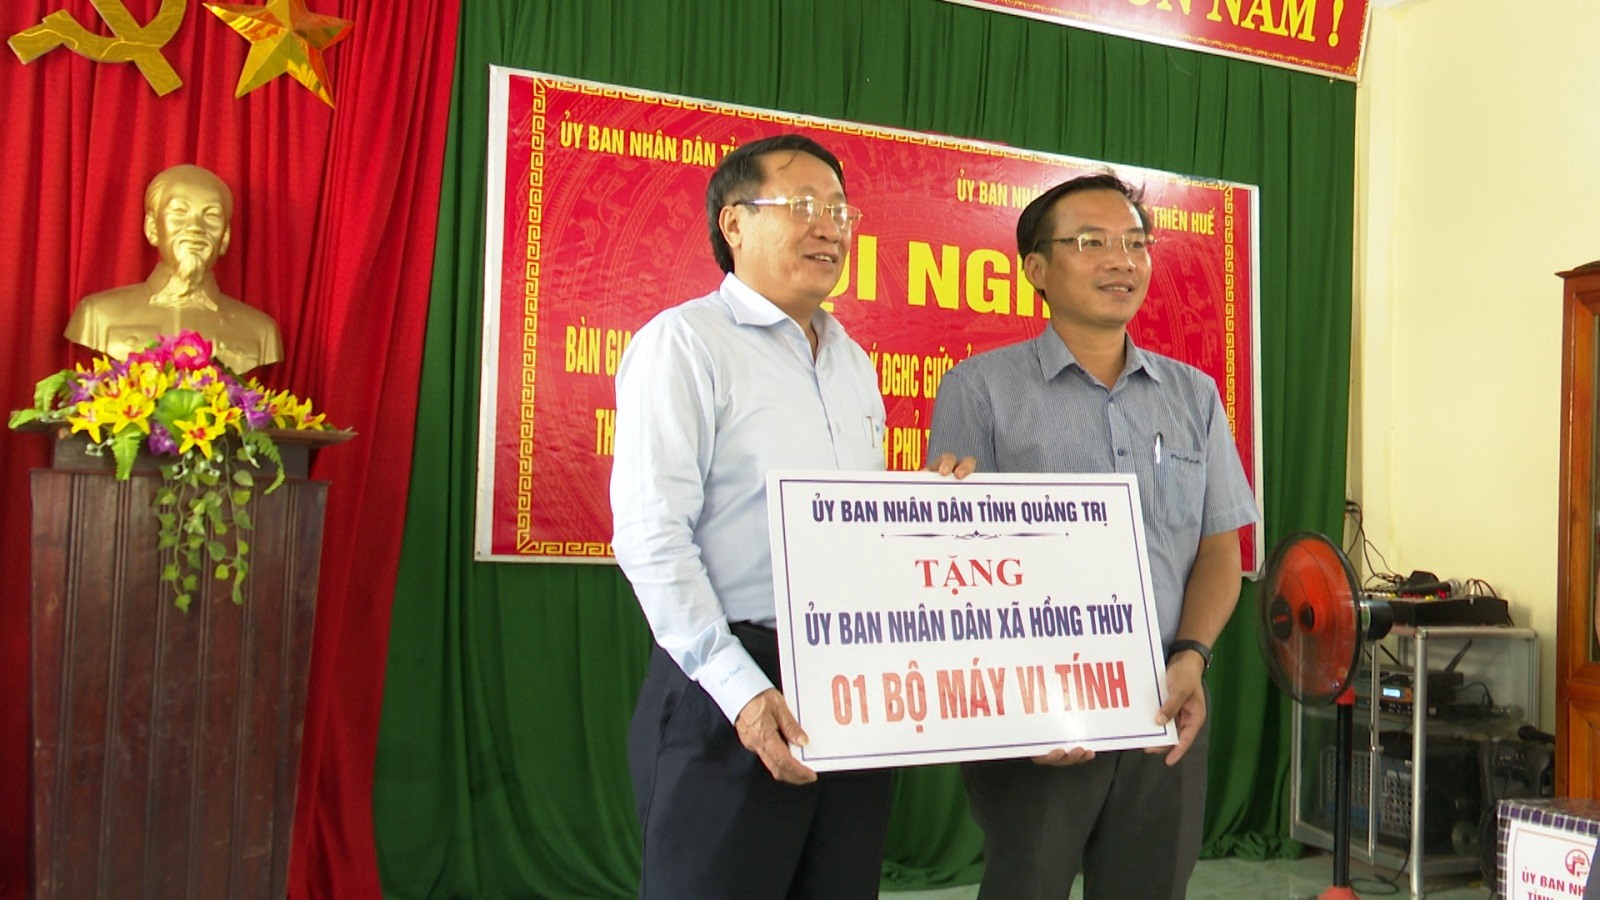 Phó Chủ tịch Thường trực UBND tỉnh Hà Sỹ Đồng trao tặng 1 bộ máy vi tính cho UBND xã Hồng Thủy, huyện A Lưới, Thừa Thiên Huế